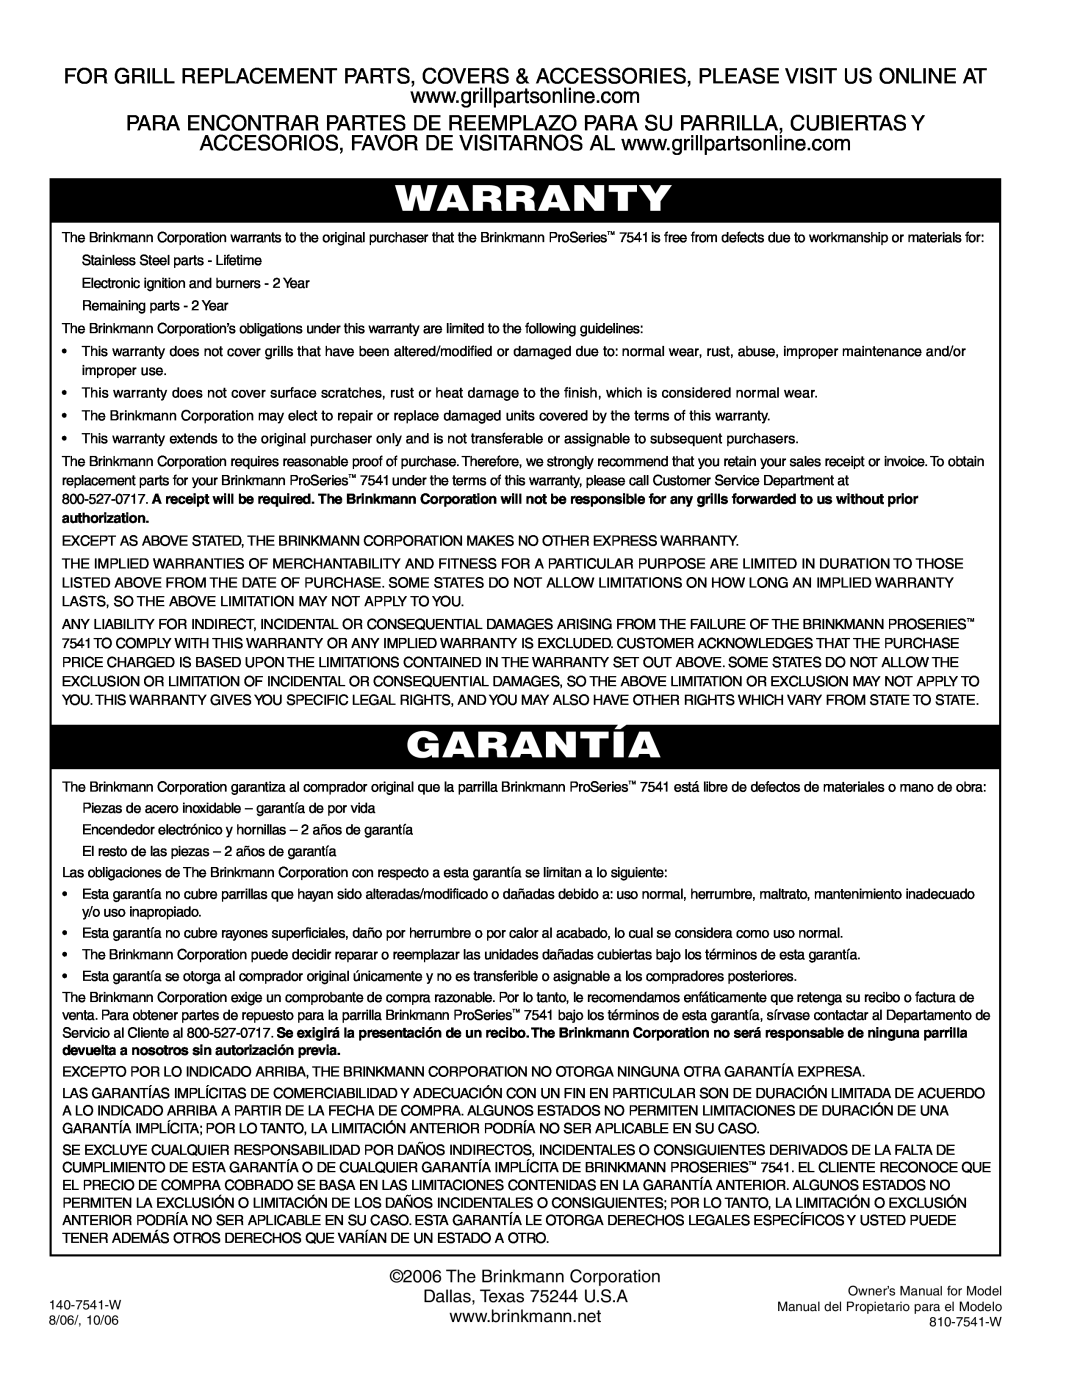 Brinkmann 7541 Series owner manual Warranty, Garantía, Para Encontrar Partes De Reemplazo Para Su Parrilla, Cubiertas Y 